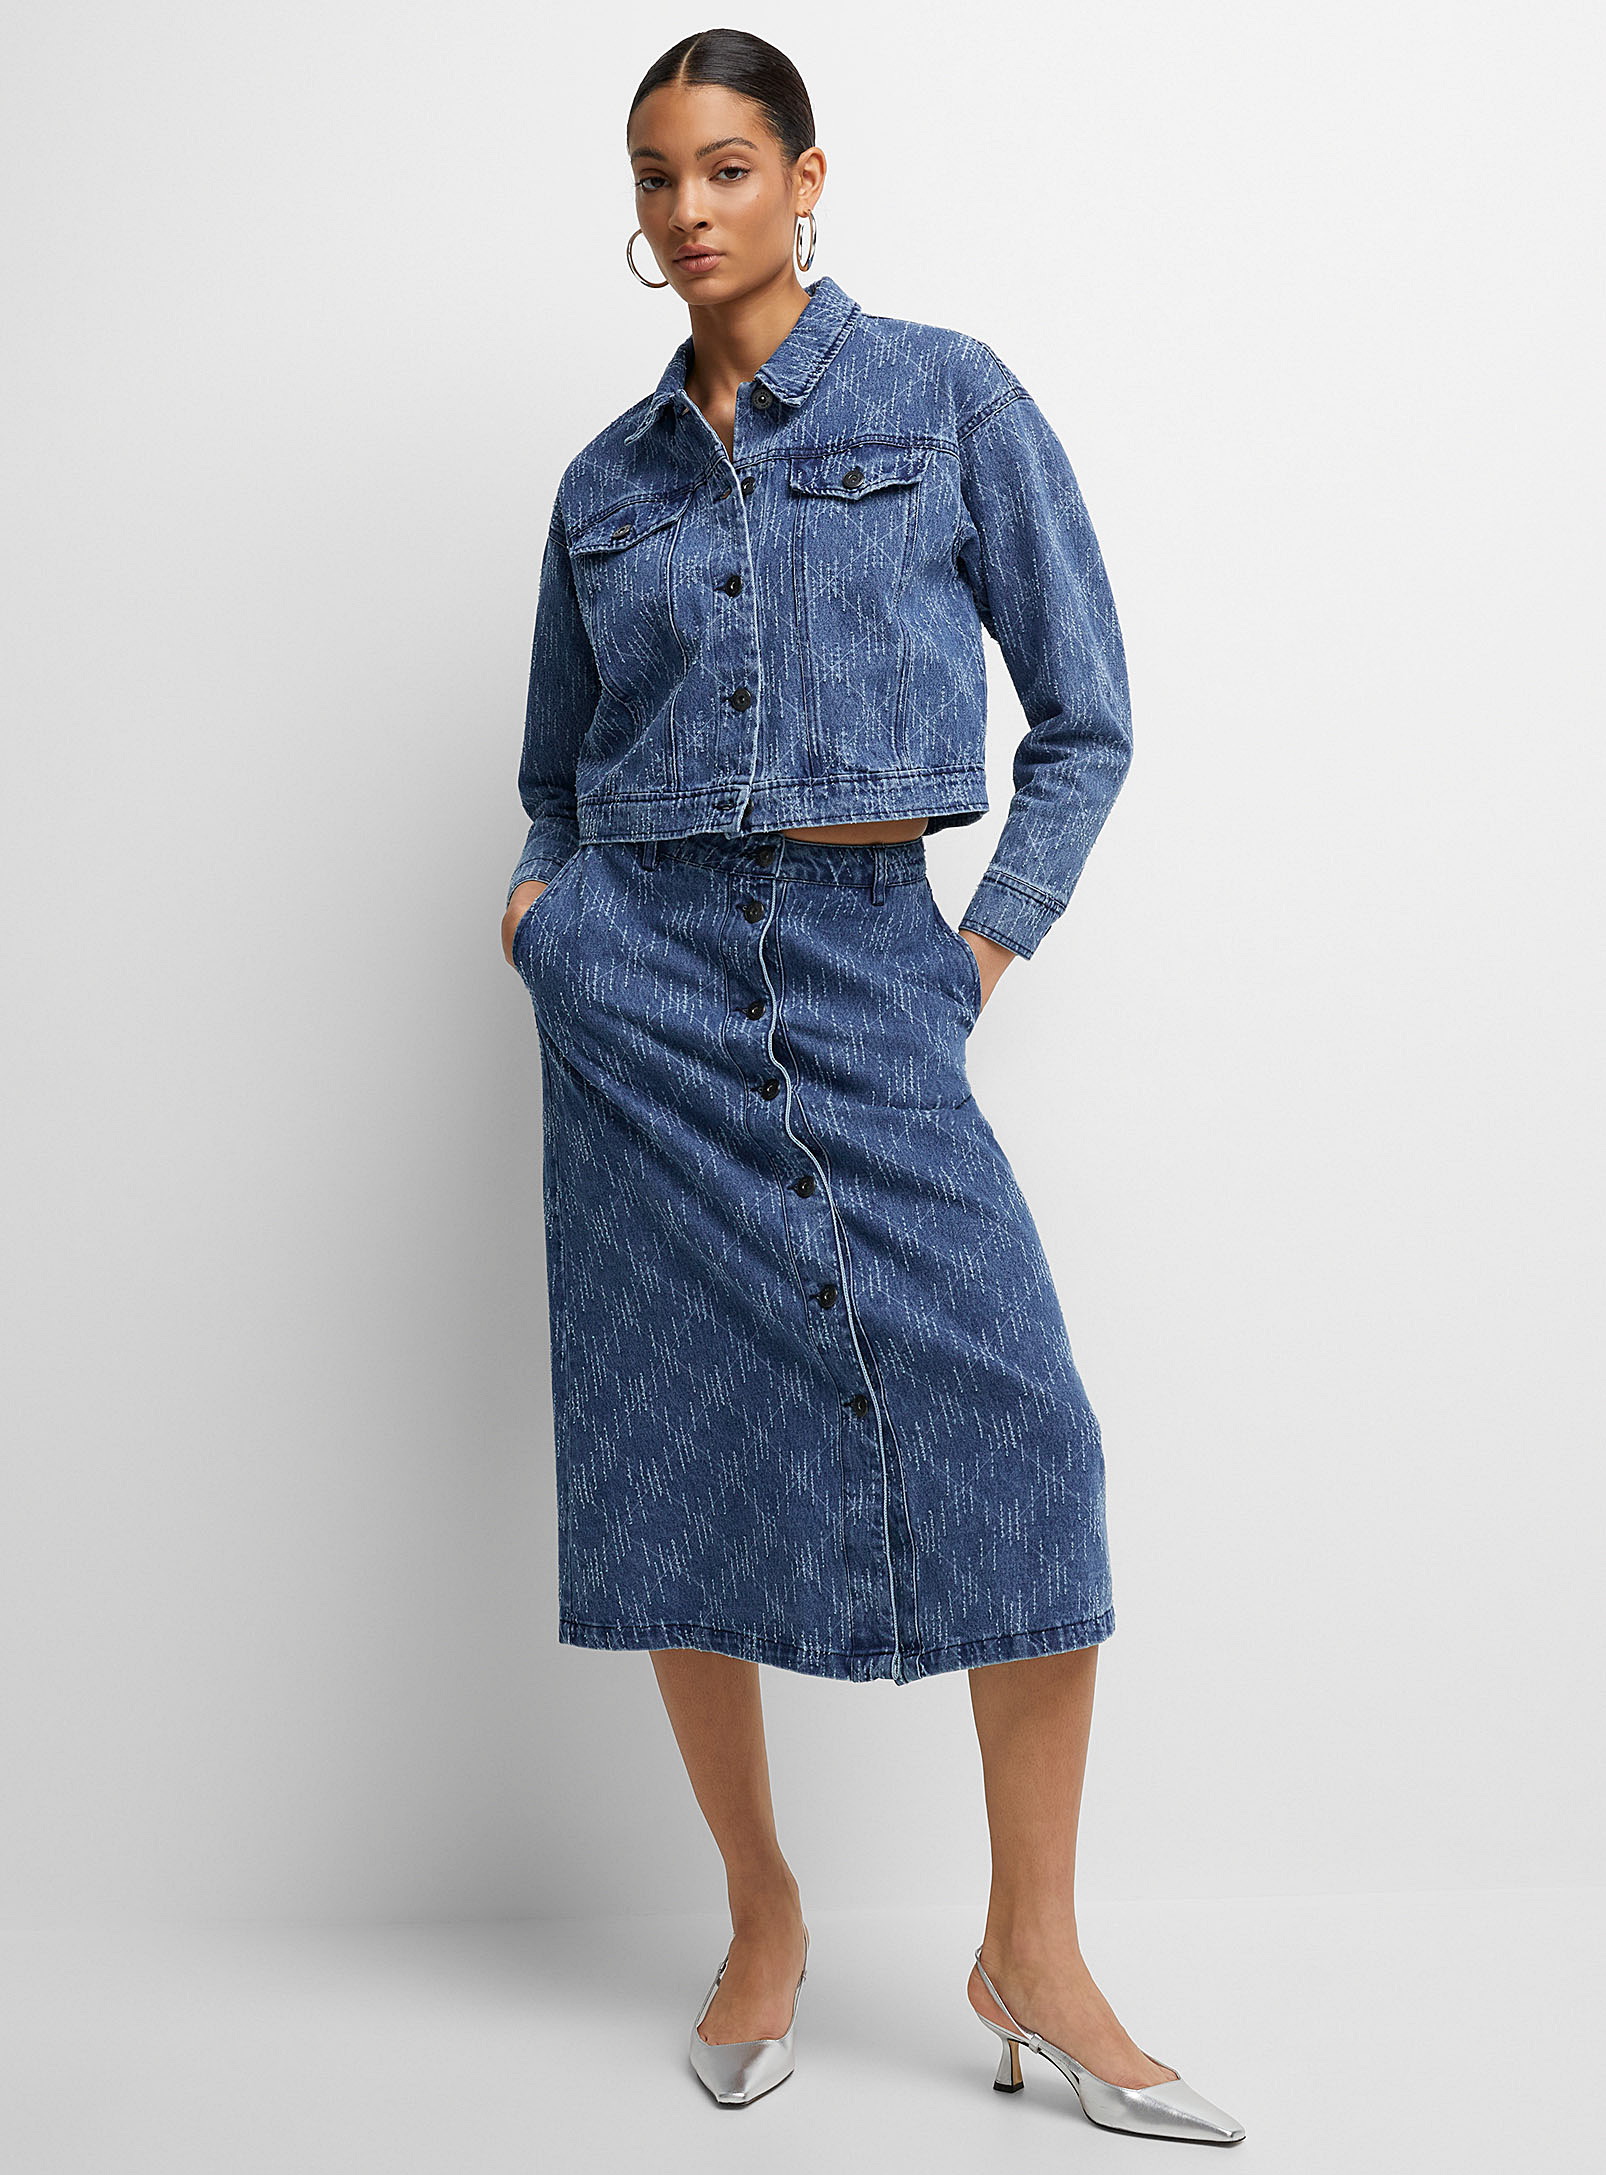 ICHI - Women's Textured hatches denim skirt